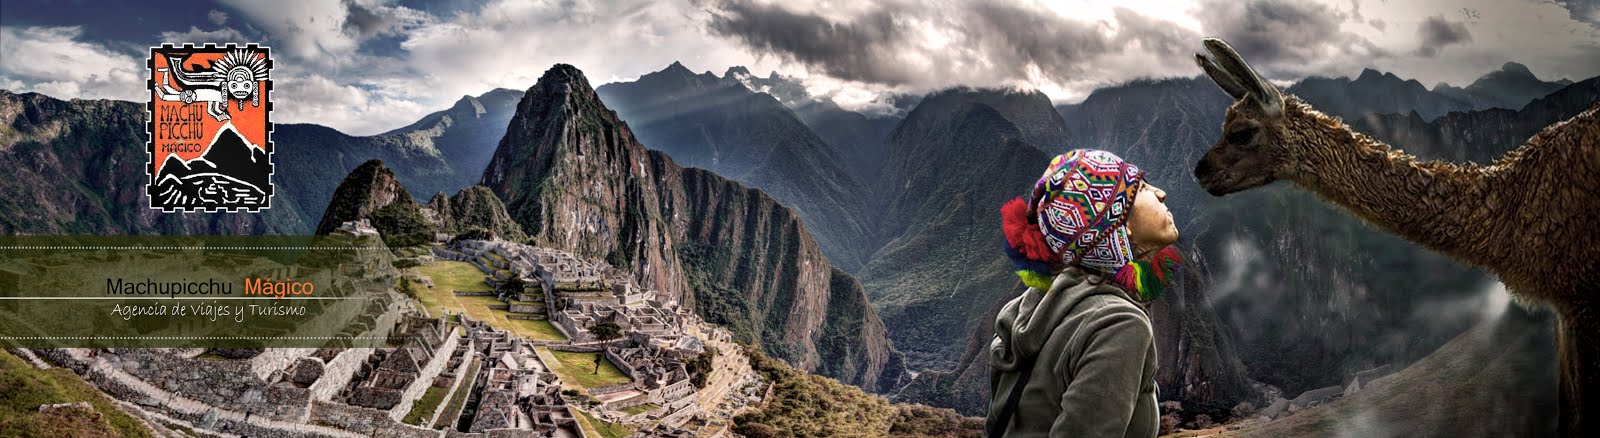 Tour Perú Machupicchu Machu Picchu Mágico Agencia de Viajes